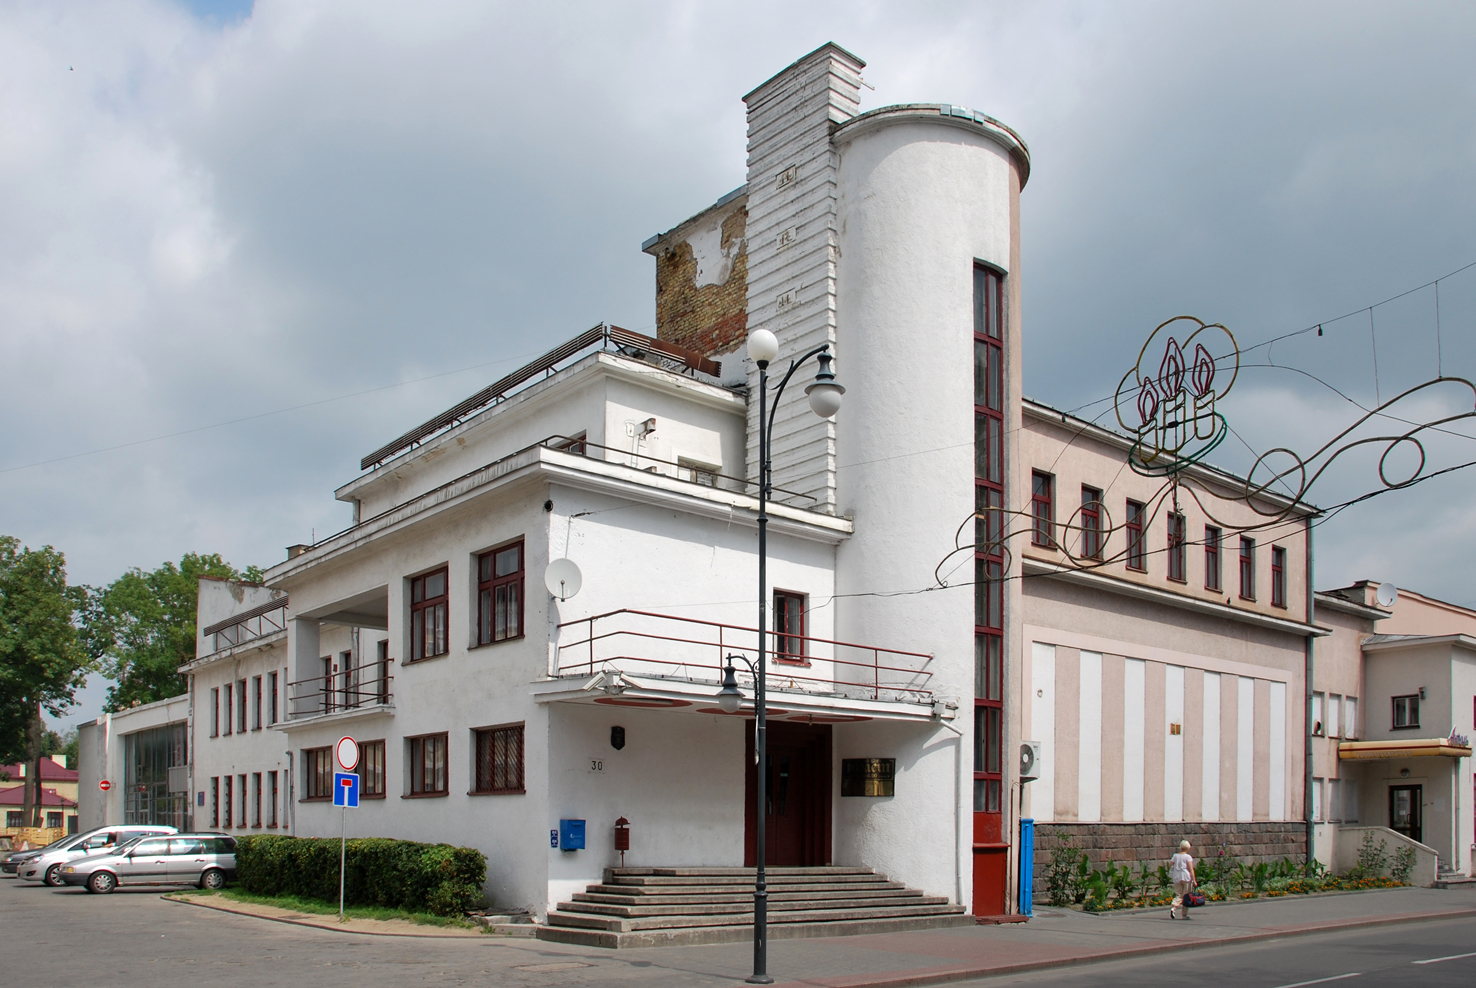 Kasyno w Grodnie, projekt Mieczysław Szczuka, rok budowy 1933